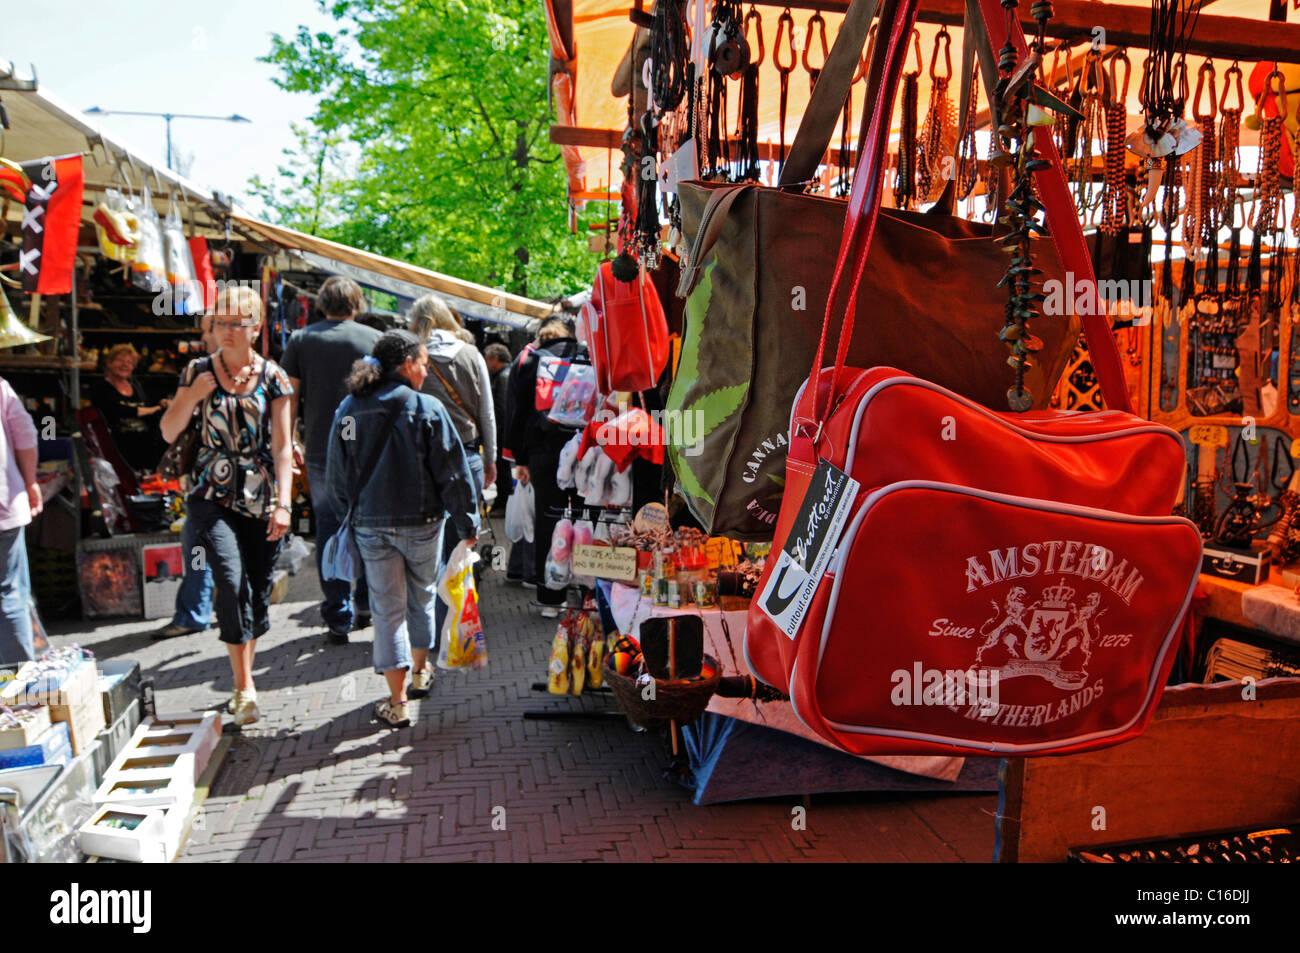 Marché hebdomadaire, marché aux puces, marché de souvenirs, vêtements, sac à main, Amsterdam, Hollande, Pays-Bas, Europe Banque D'Images